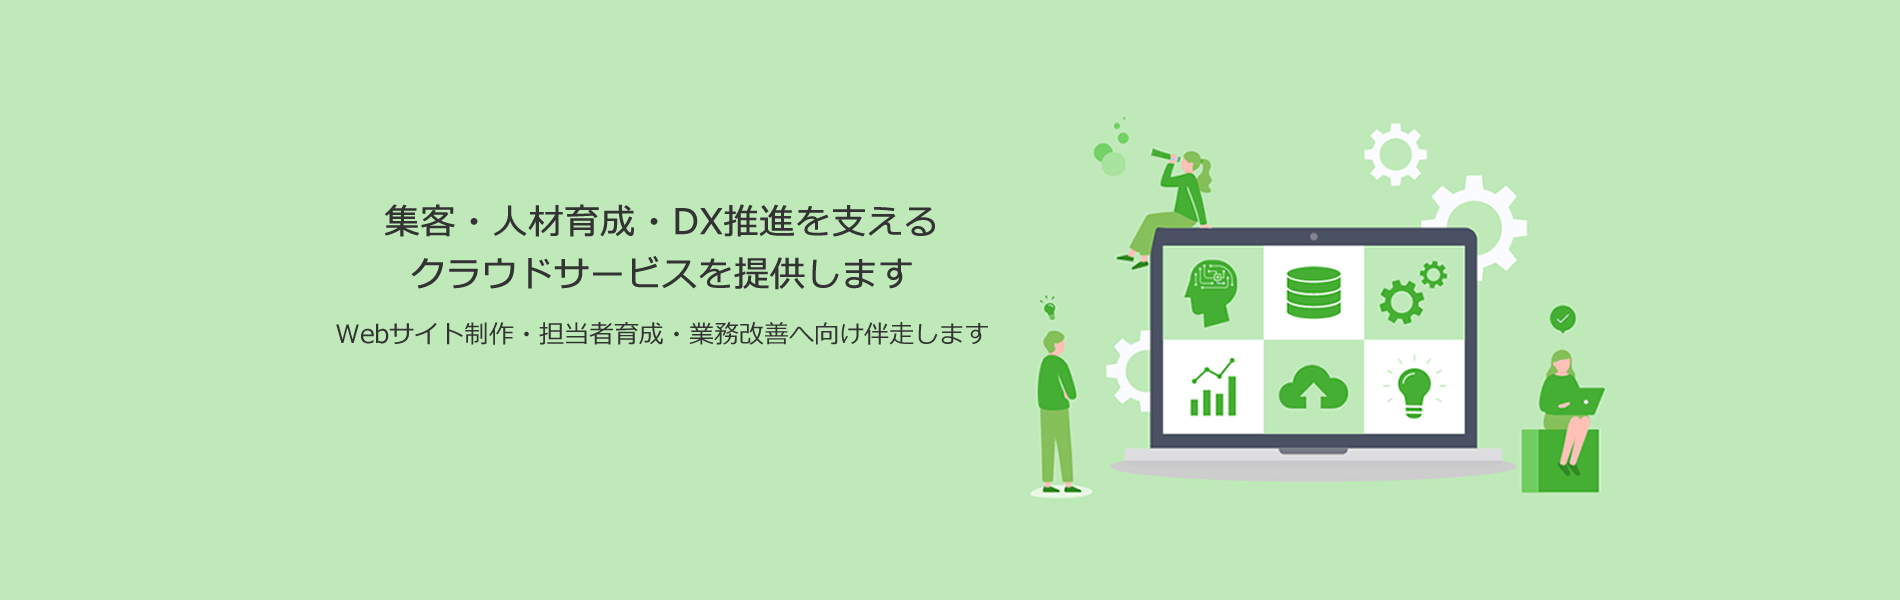 集客・人材育成・DX推進を支える クラウドサービスを提供します。Webサイト制作・担当者育成・業務改善へ向け伴走します。